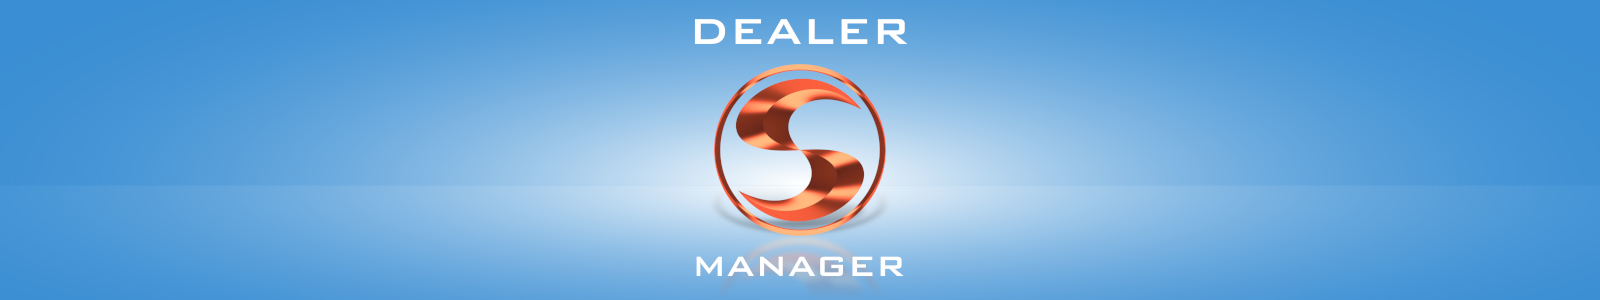 Dealer Manager - program dla sprzedawców okien i drzwi